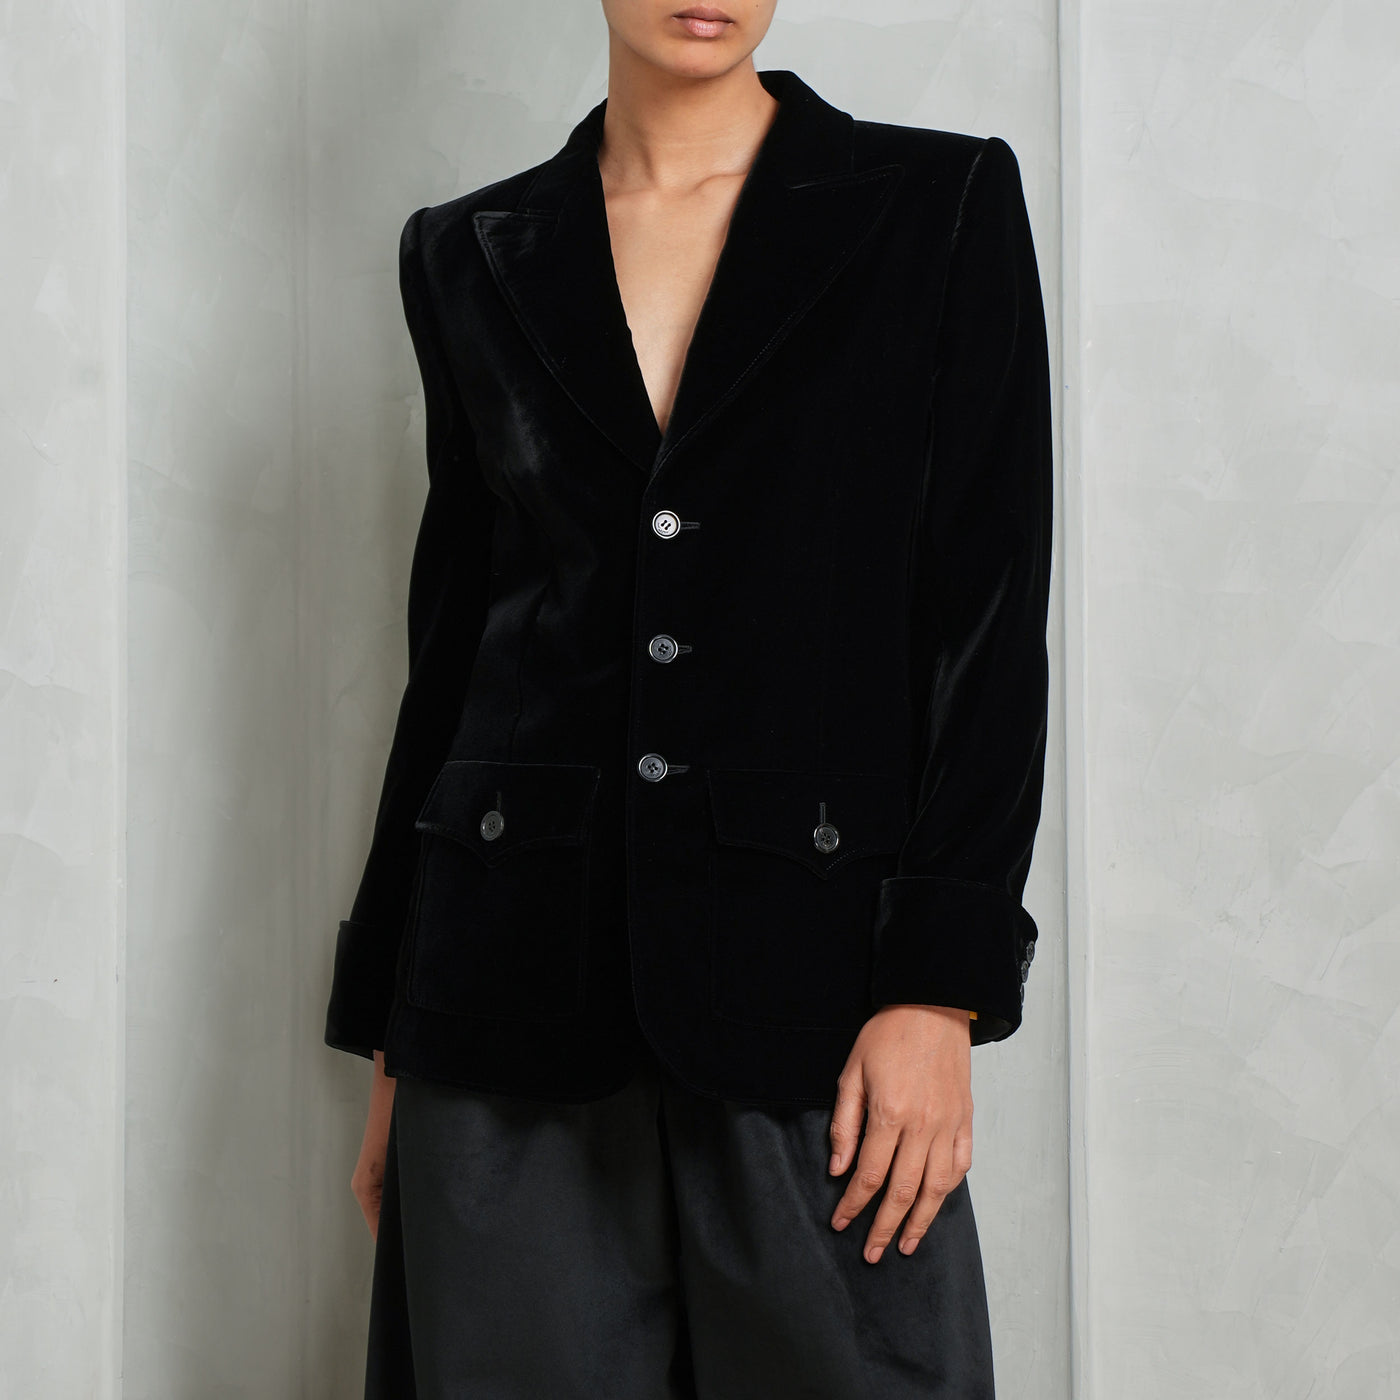 SAINT LAURENT black velvet single breasted blazer jacket